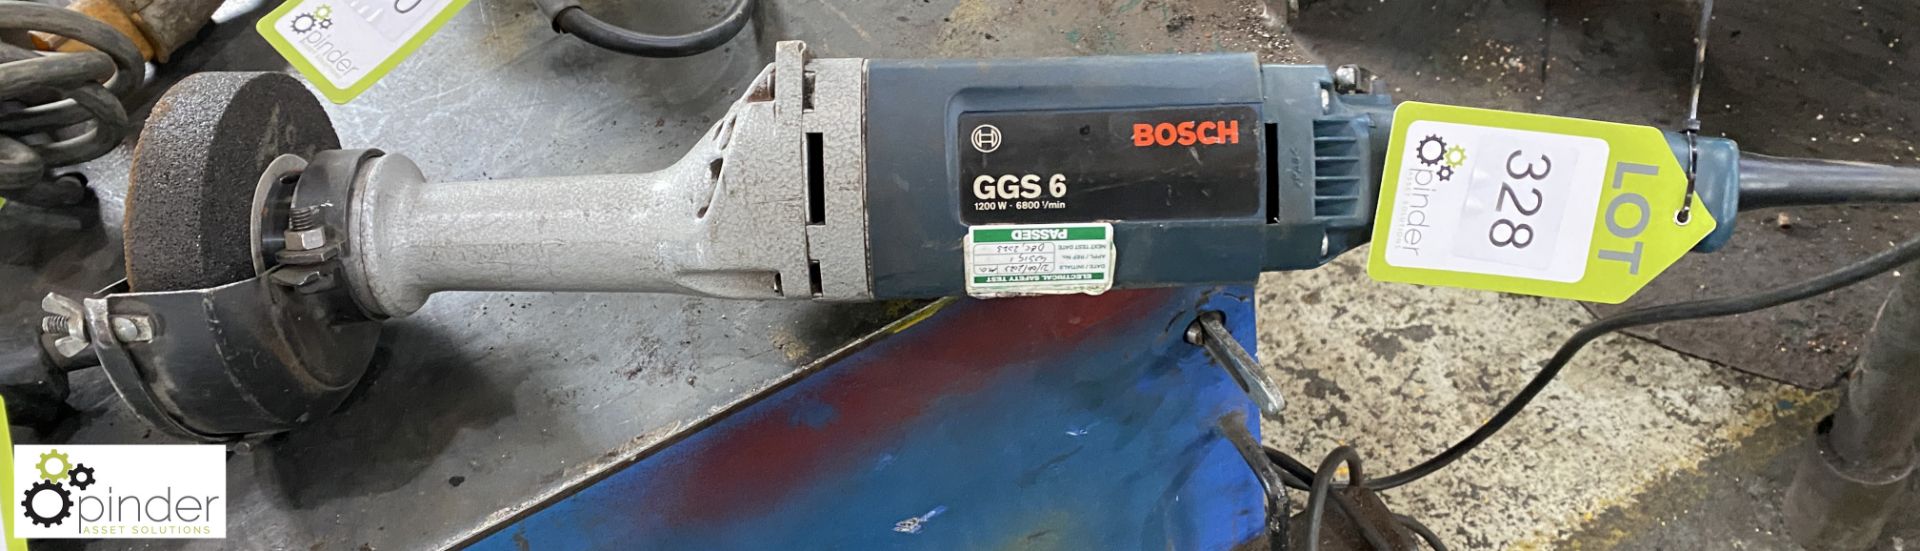 Bosch GGS6 Straight Line Grinder, 110volts